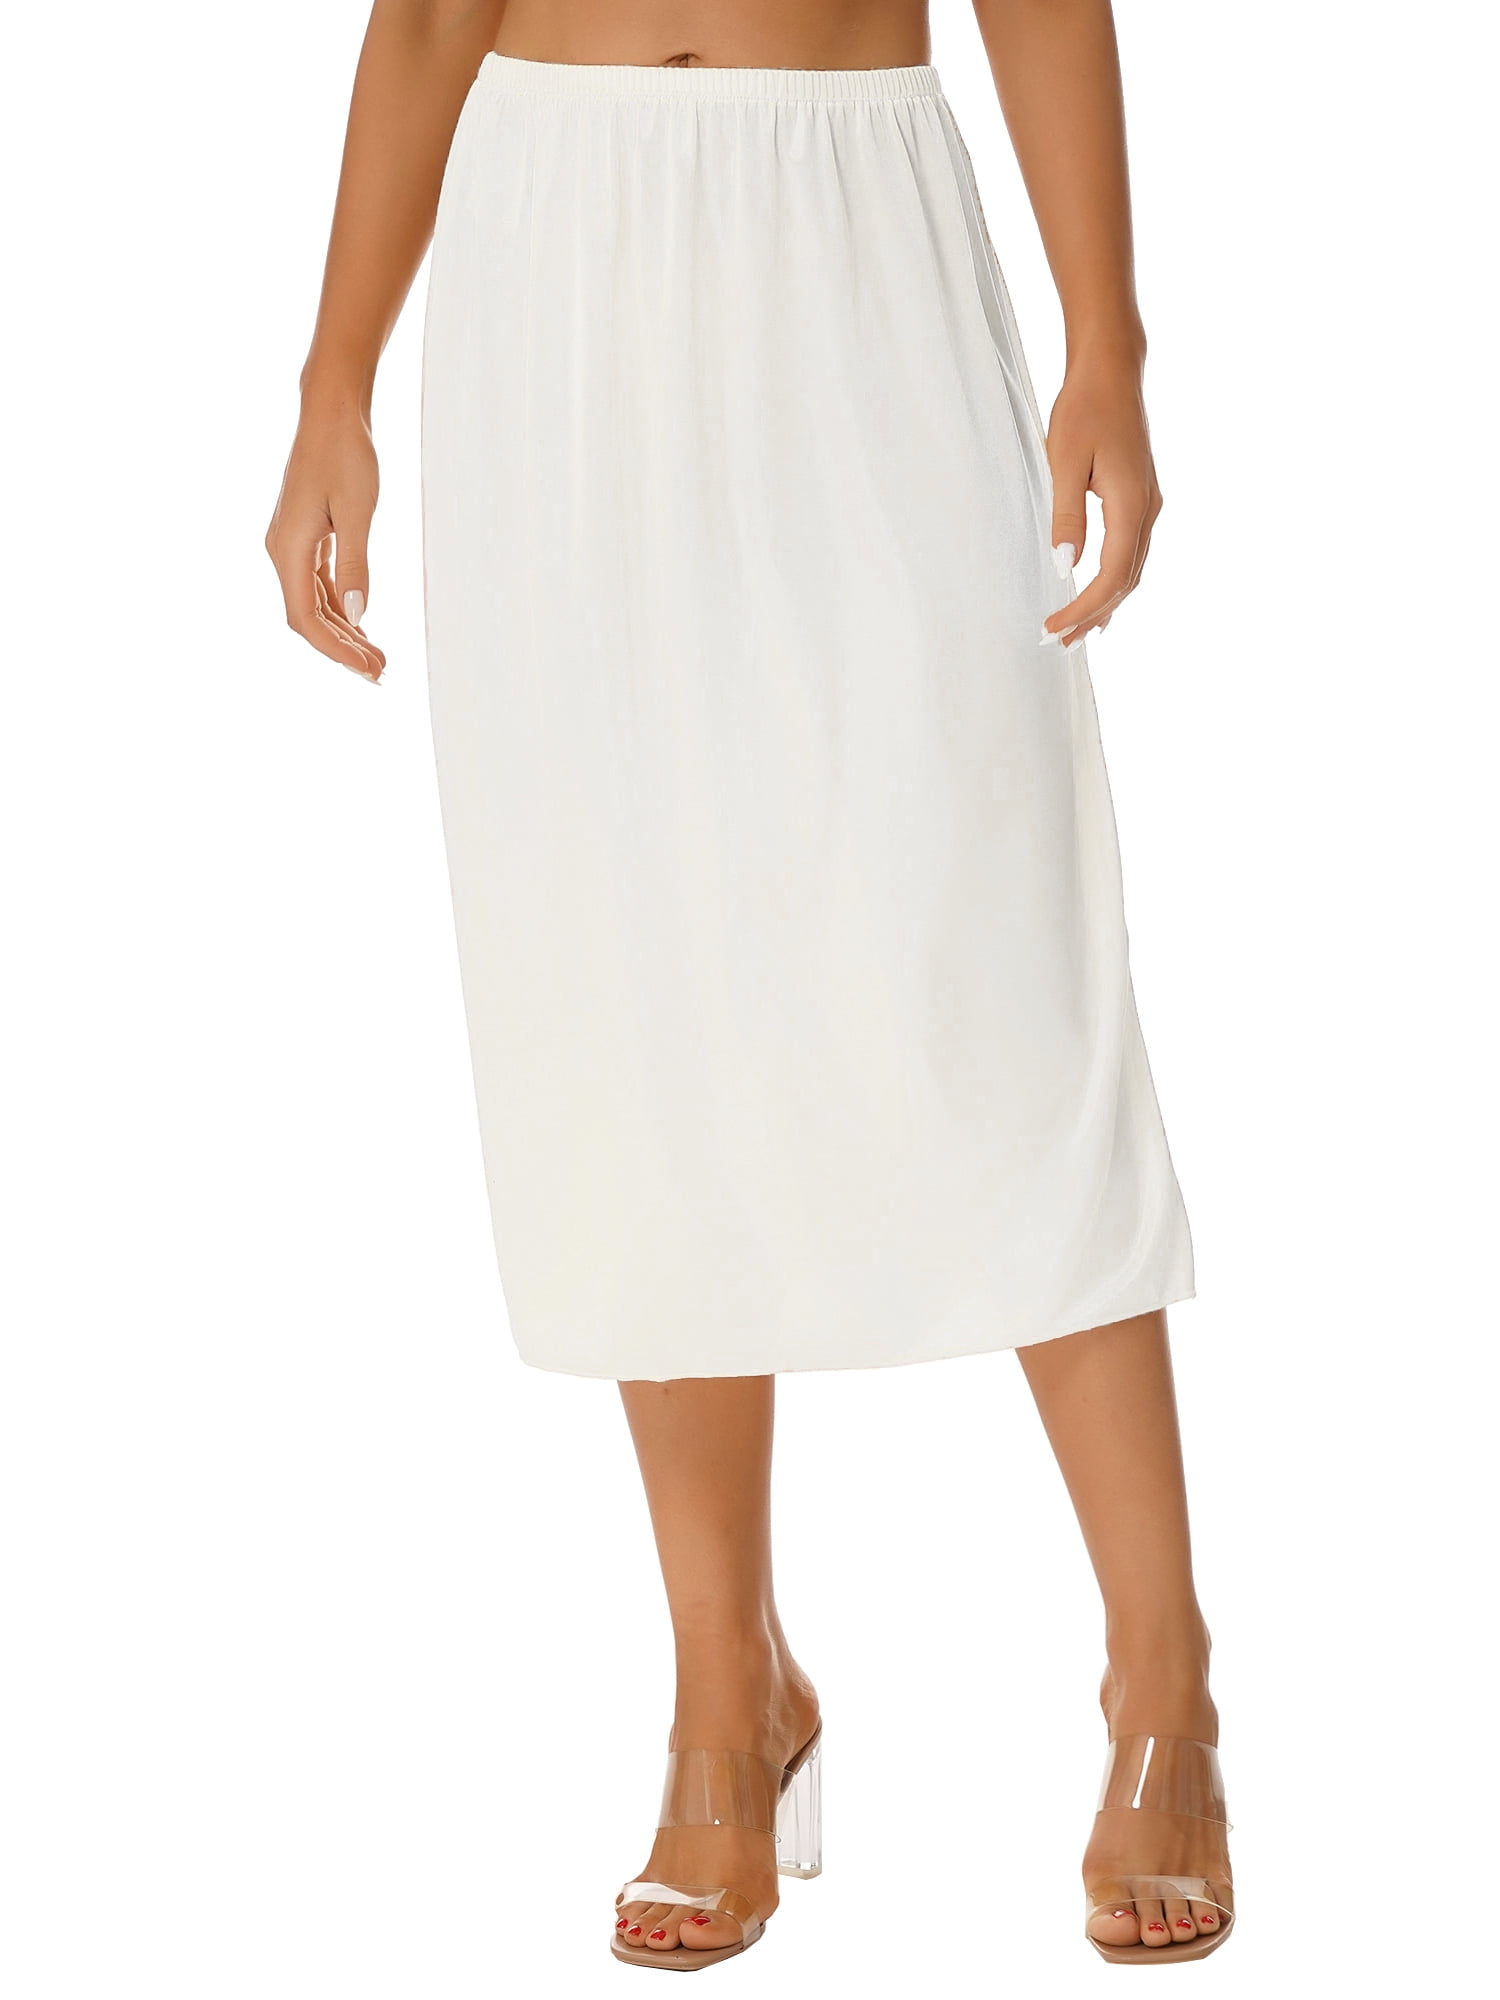 DPOIS Half Slips for Women Under Dresses Underskirts Petticoat 75cm White  XXL 